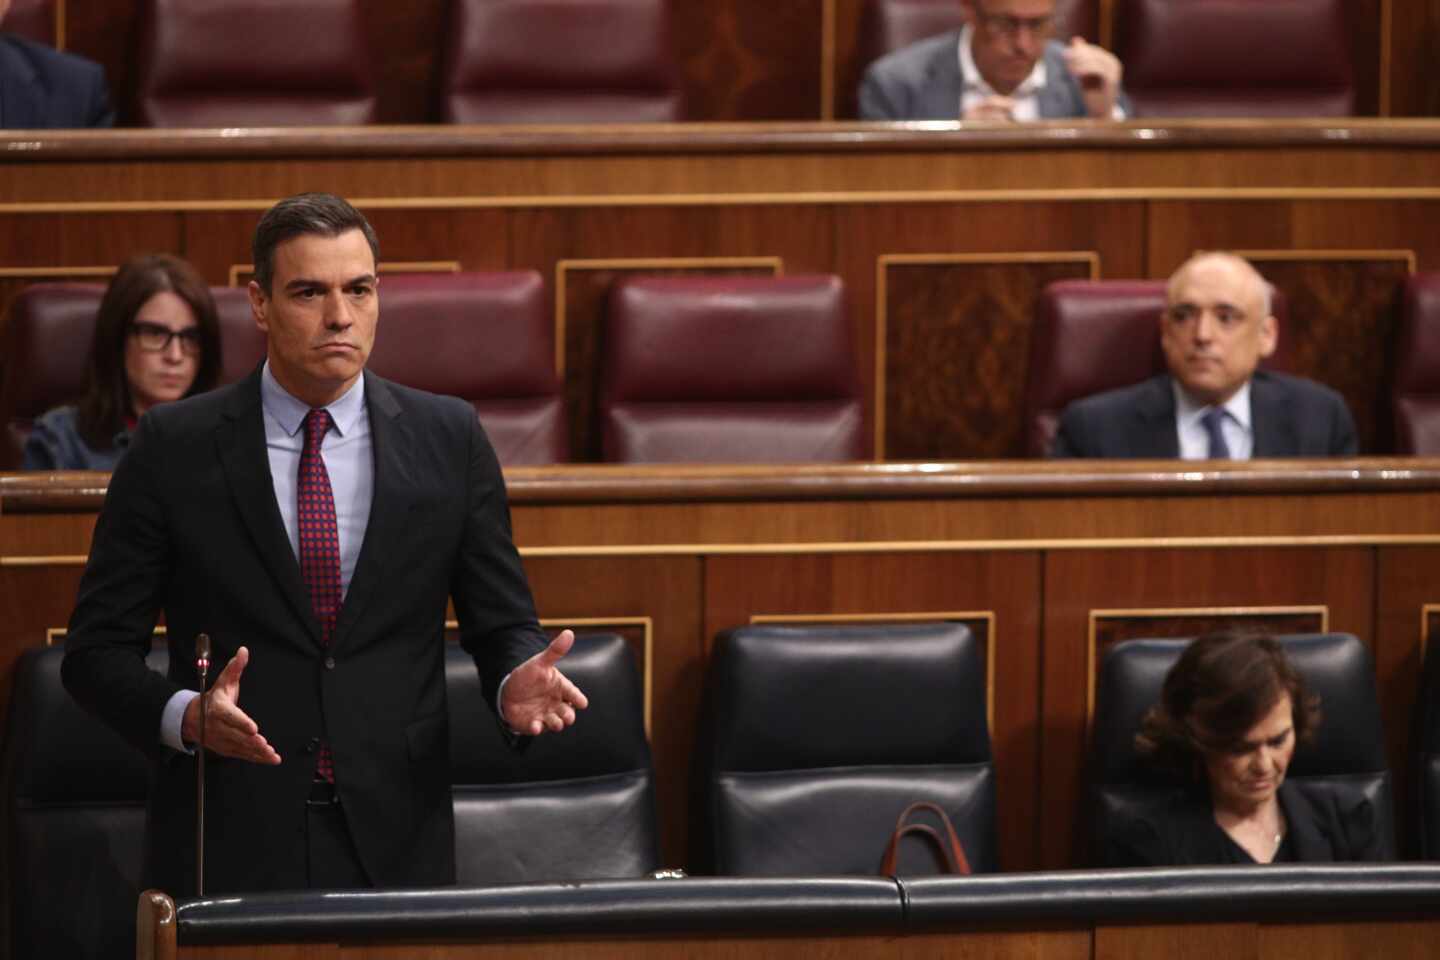 Bal acusa a Sánchez de instalar a España en el "guerracivilismo y en las trincheras"